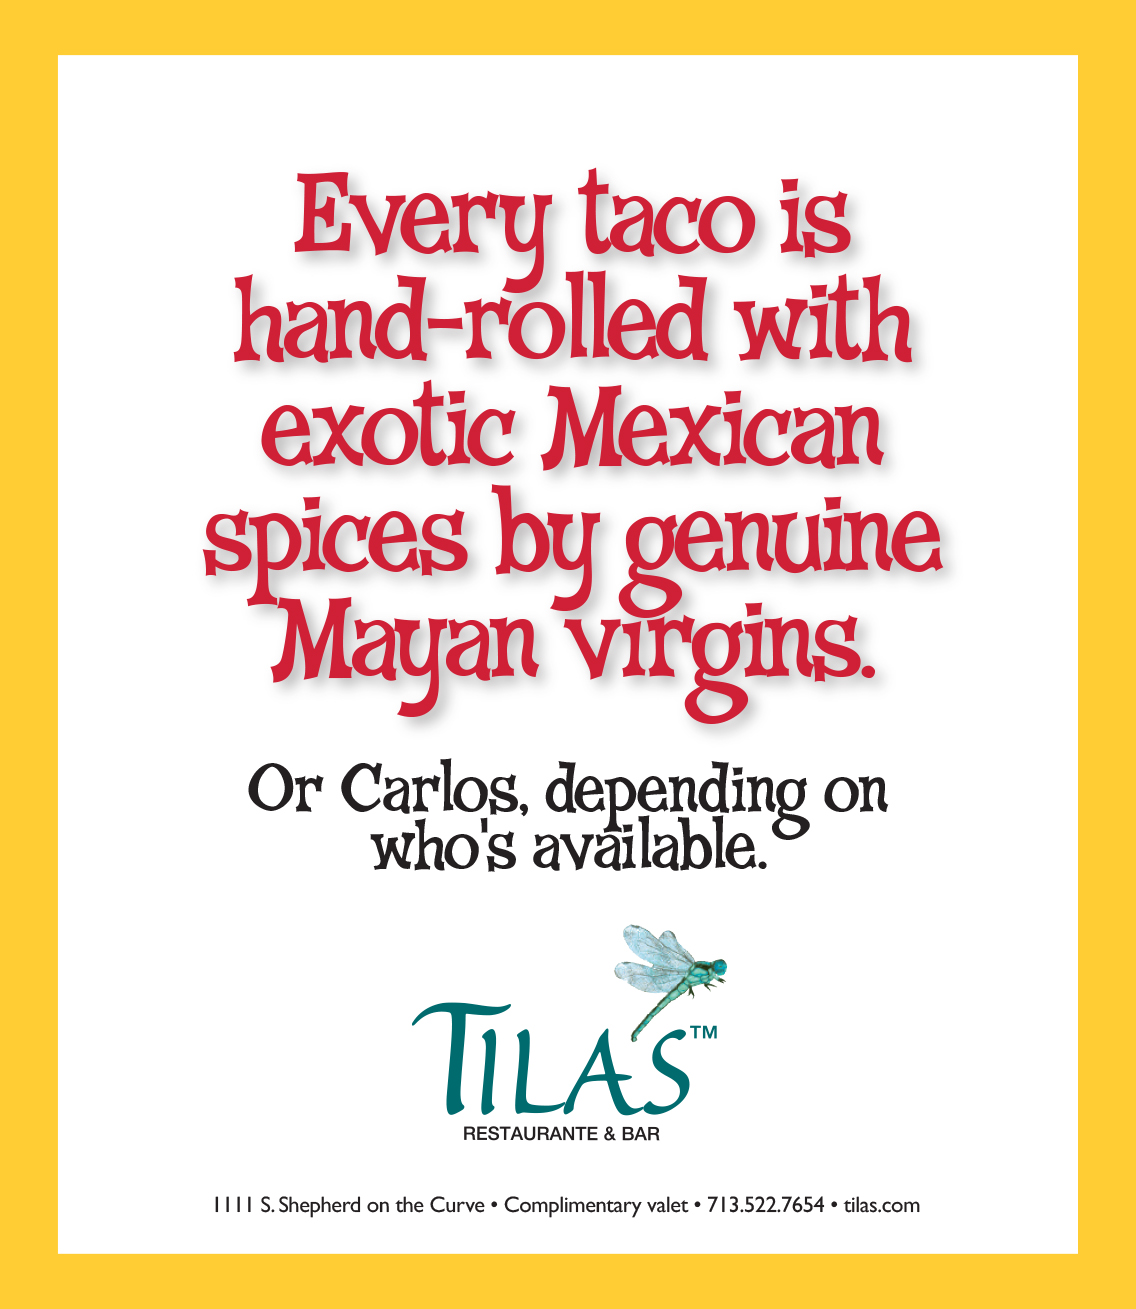 Tila's Restaurante advertising